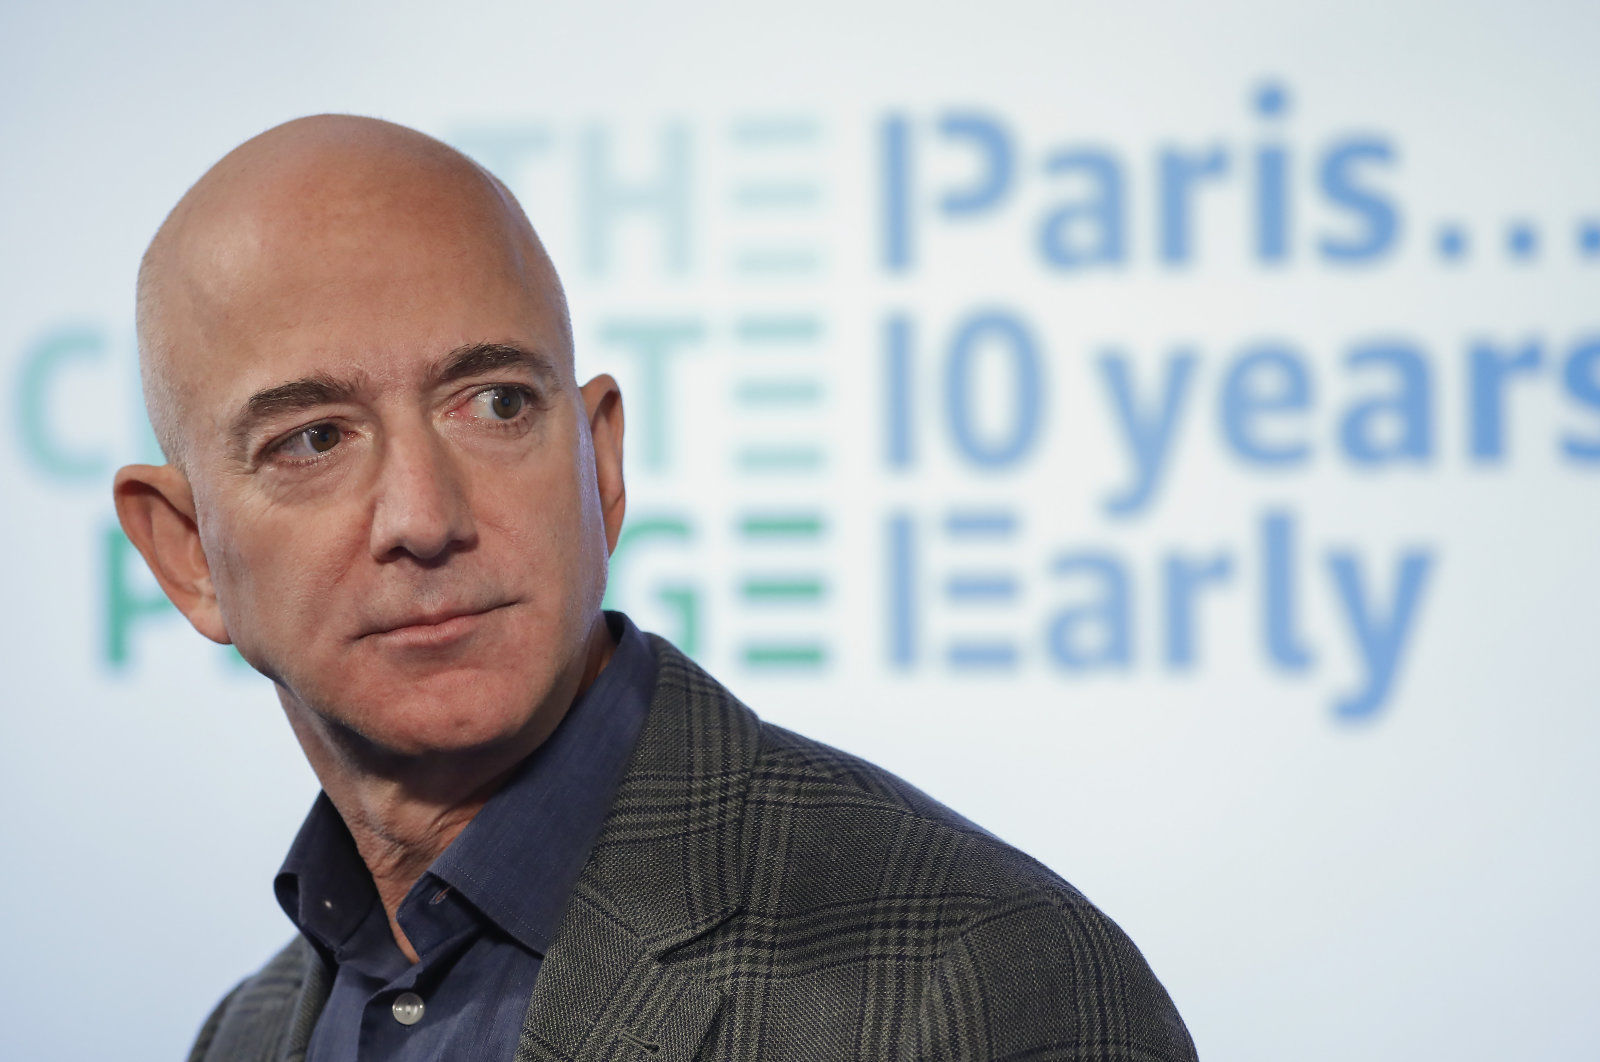 Amazon CEOジェフ・ベゾス、気候変動対策のための基金設立。約1.1兆円を提供へ